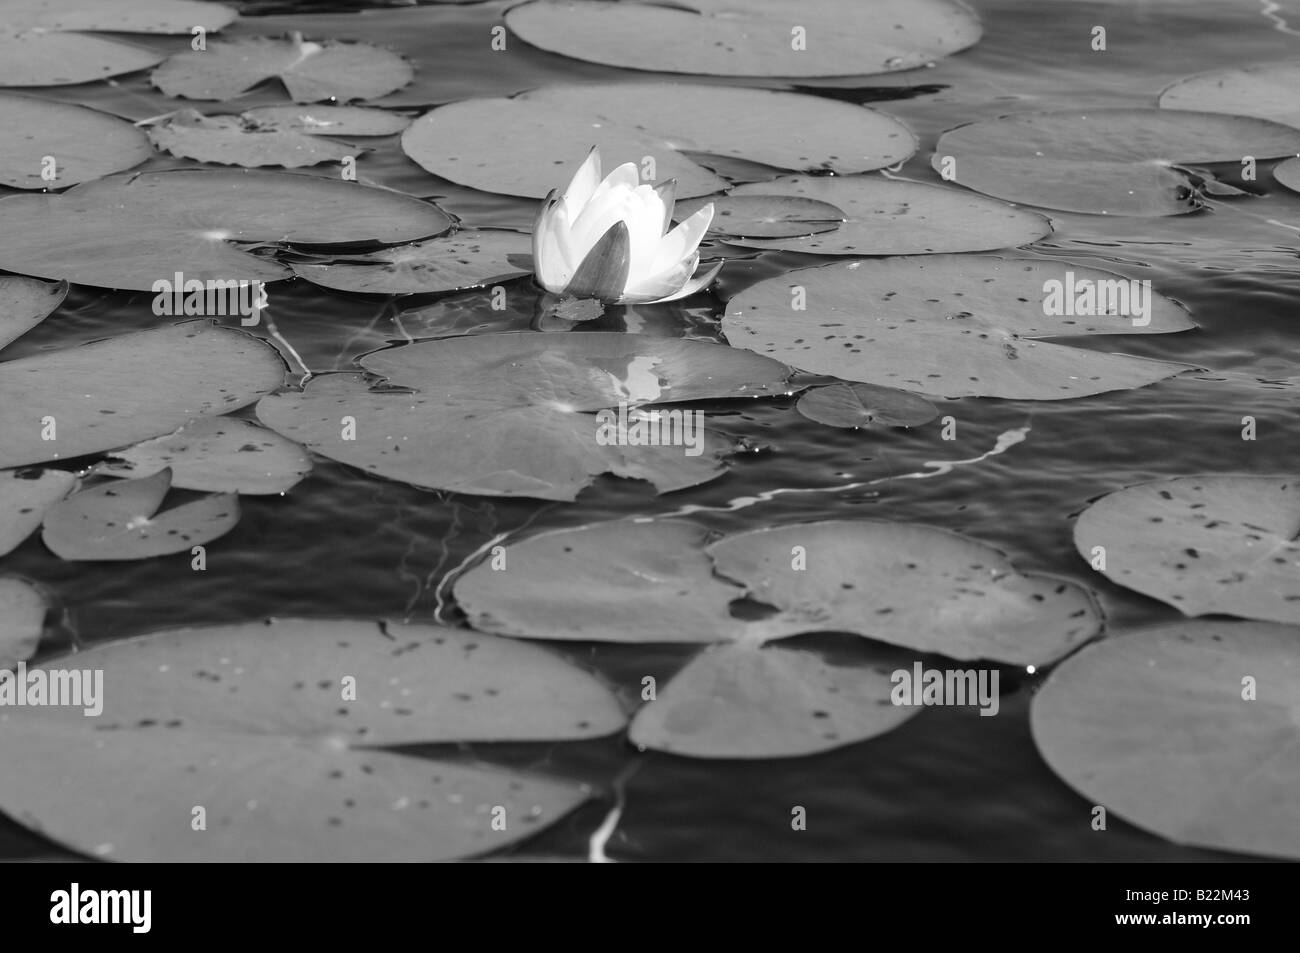 Fotografia in bianco e nero di un giglio di acqua e ninfee galleggianti delicatamente sulle calme acque di un piccolo stagno o lago. Foto Stock